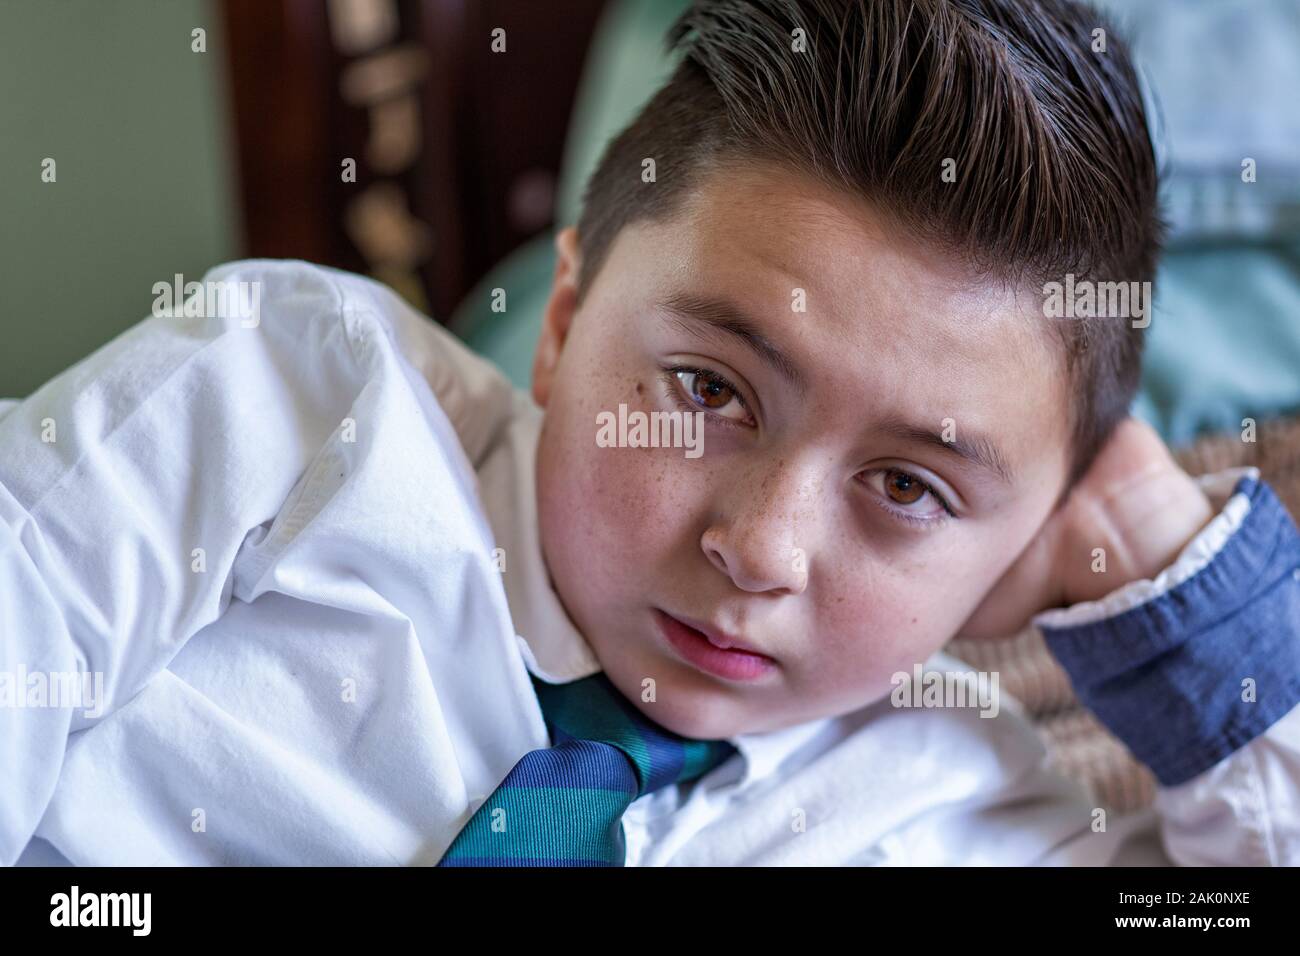 Razza mista Asian Caucasian boy marrone con Pompadour capelli in abito bianco shirt uniformi scolastiche con il verde e il blu cravatta reclinata su il suo gomito Foto Stock